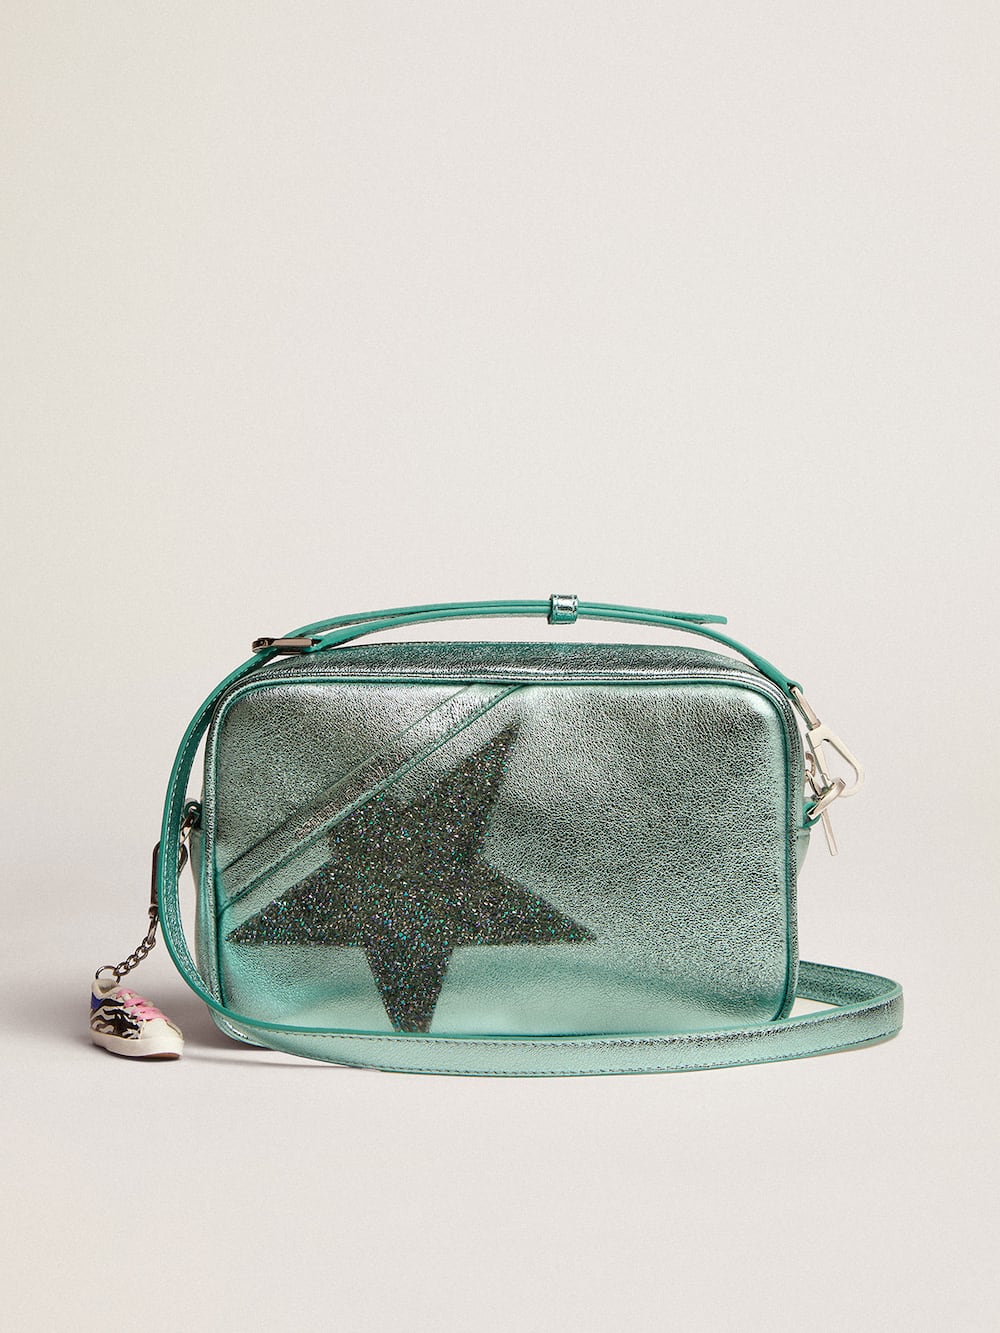 Golden Goose - Star Bag de piel laminada turquesa con estrella de cristales de Swarovski in 